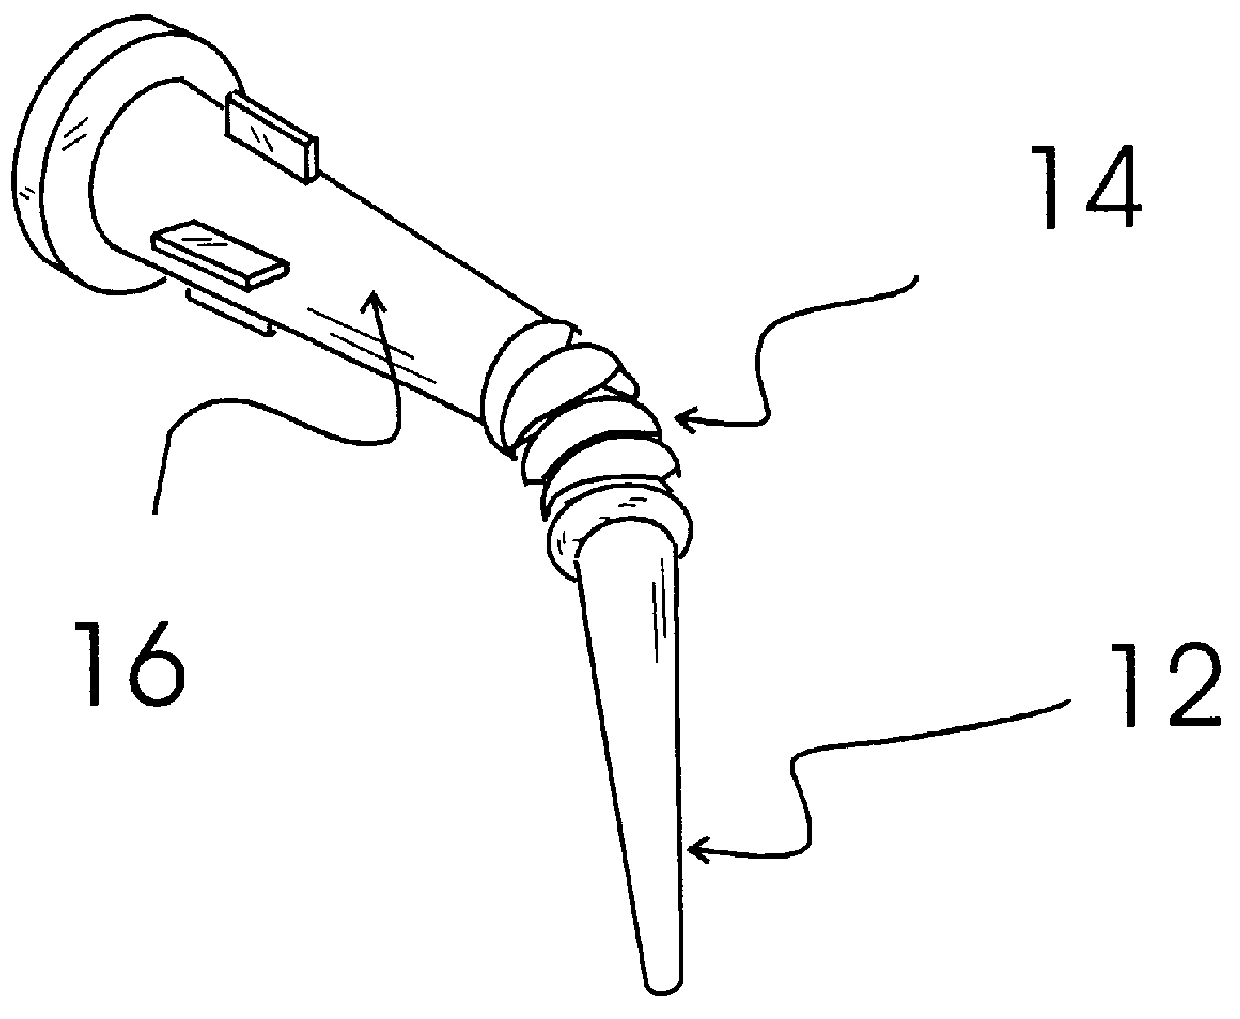 Flexible caulk tube nozzle